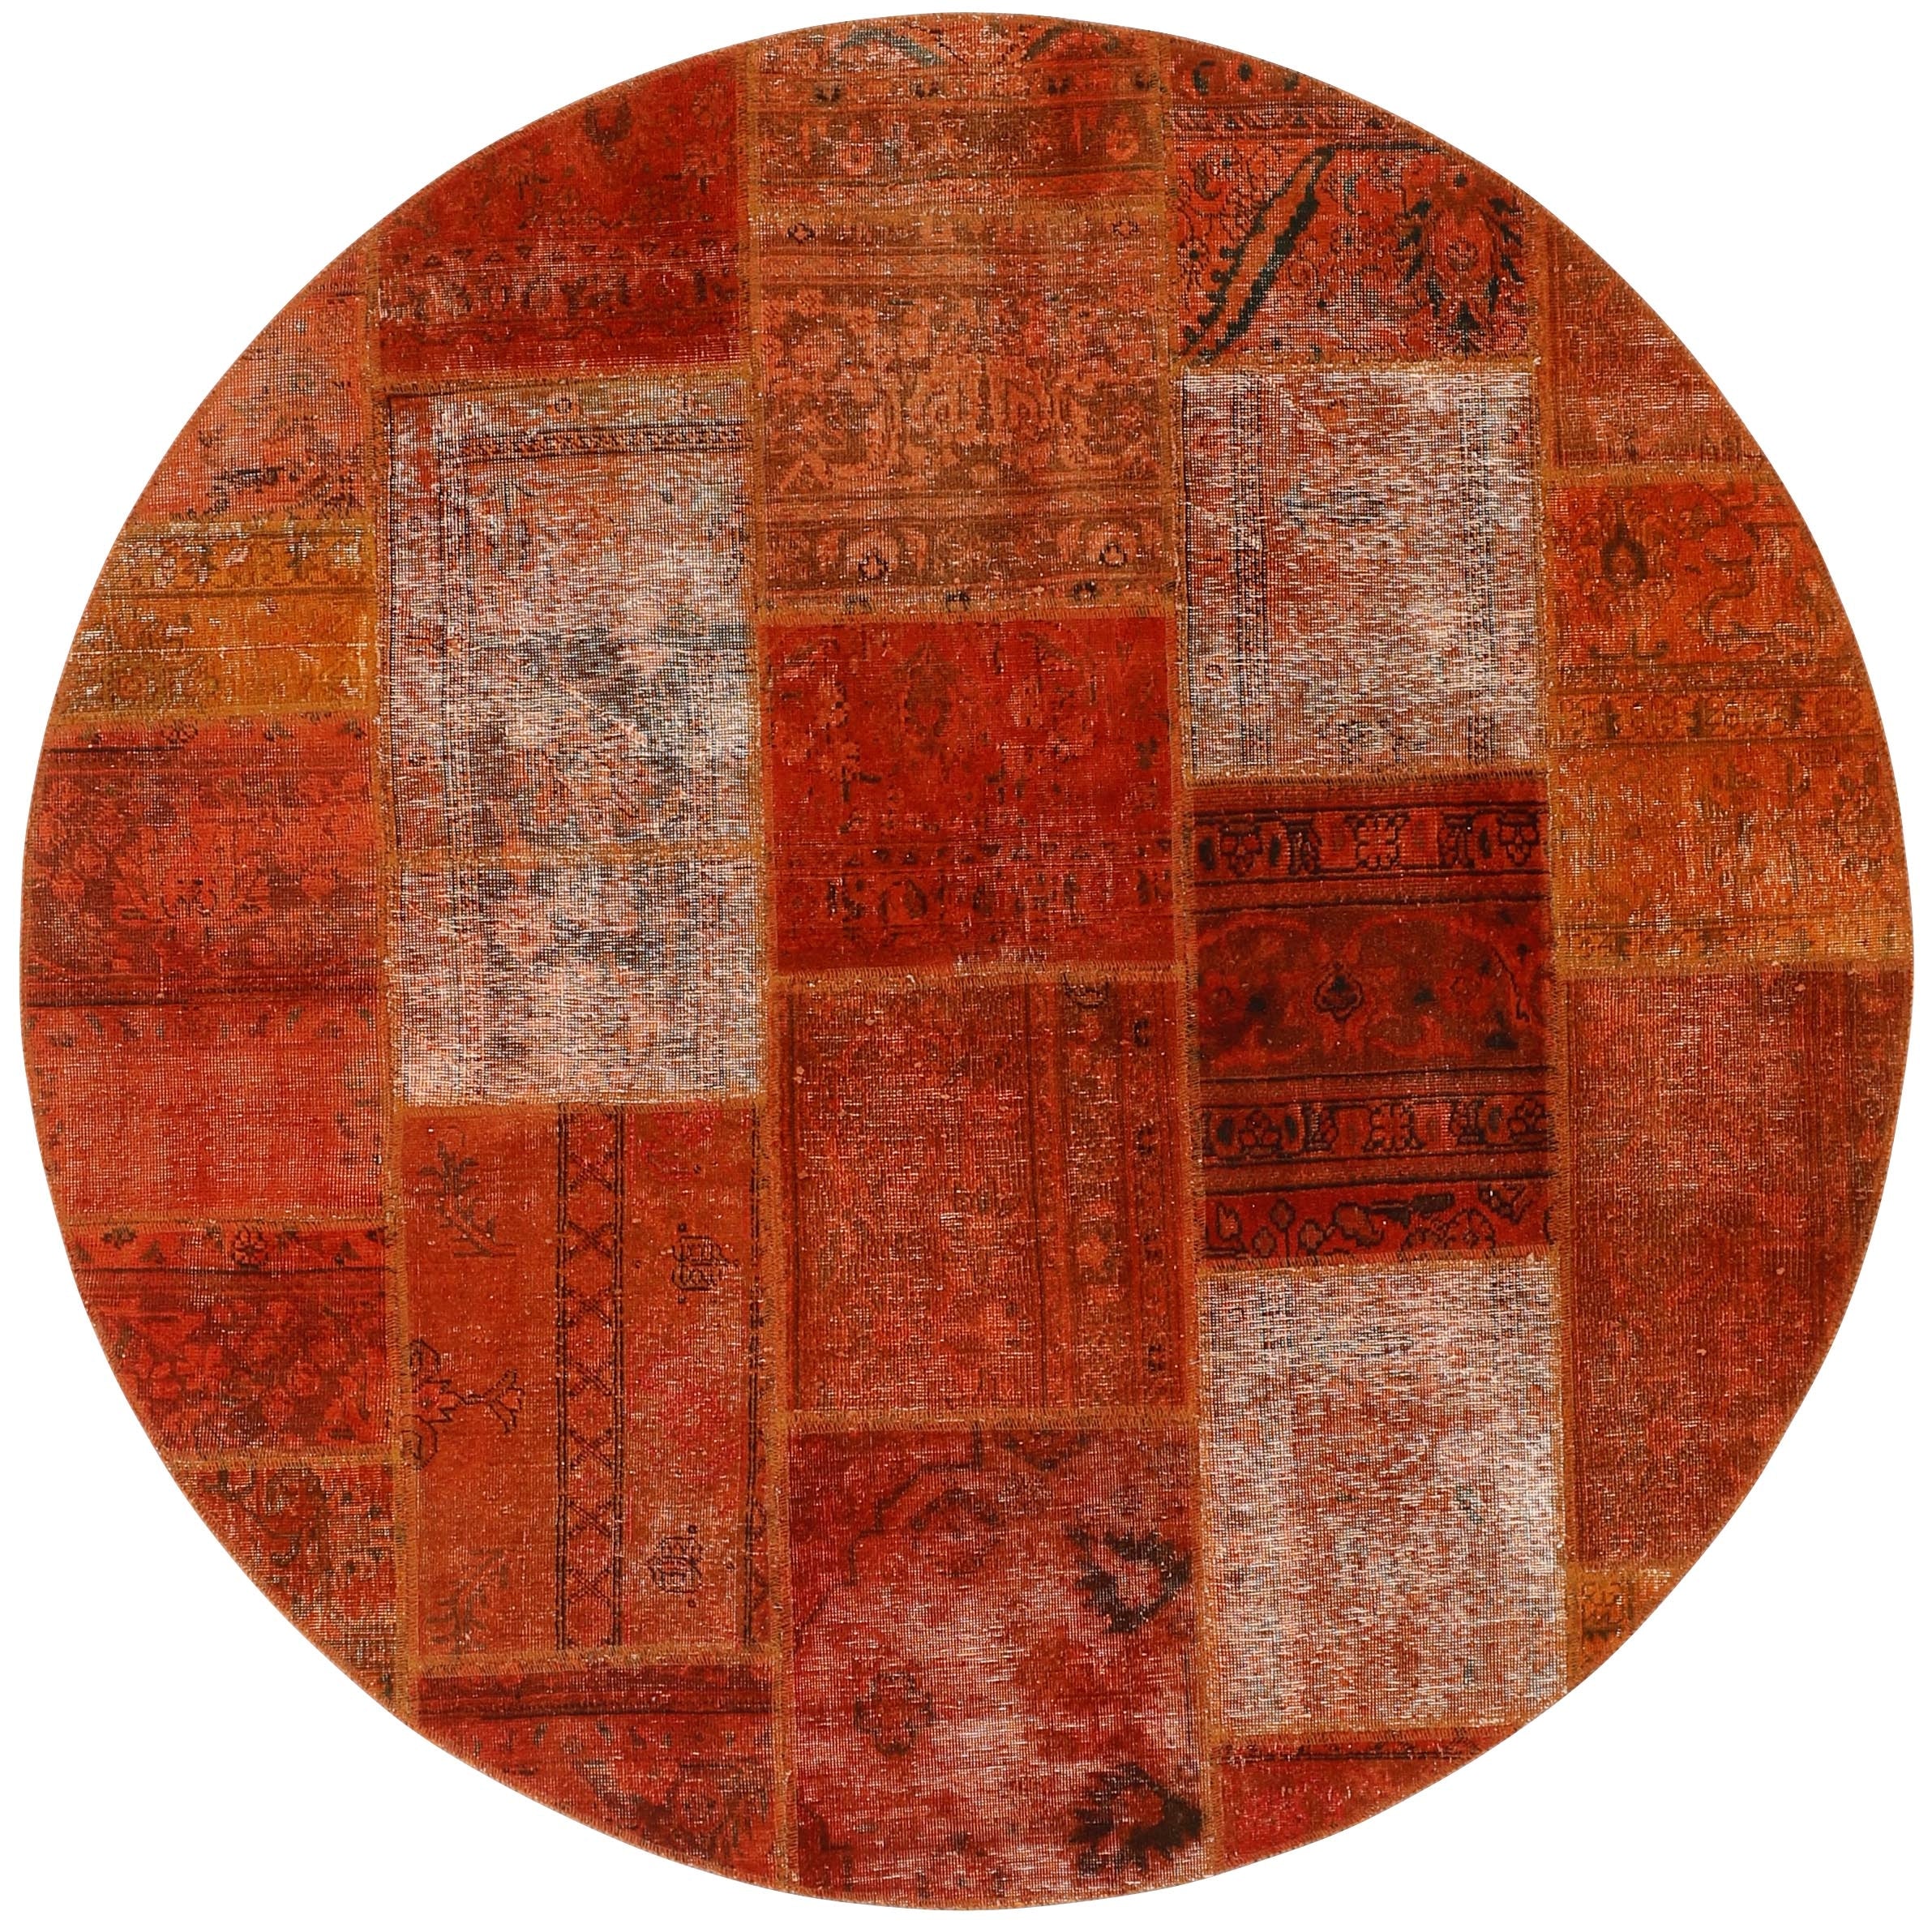 Authentic orange patchwork persian circle rug